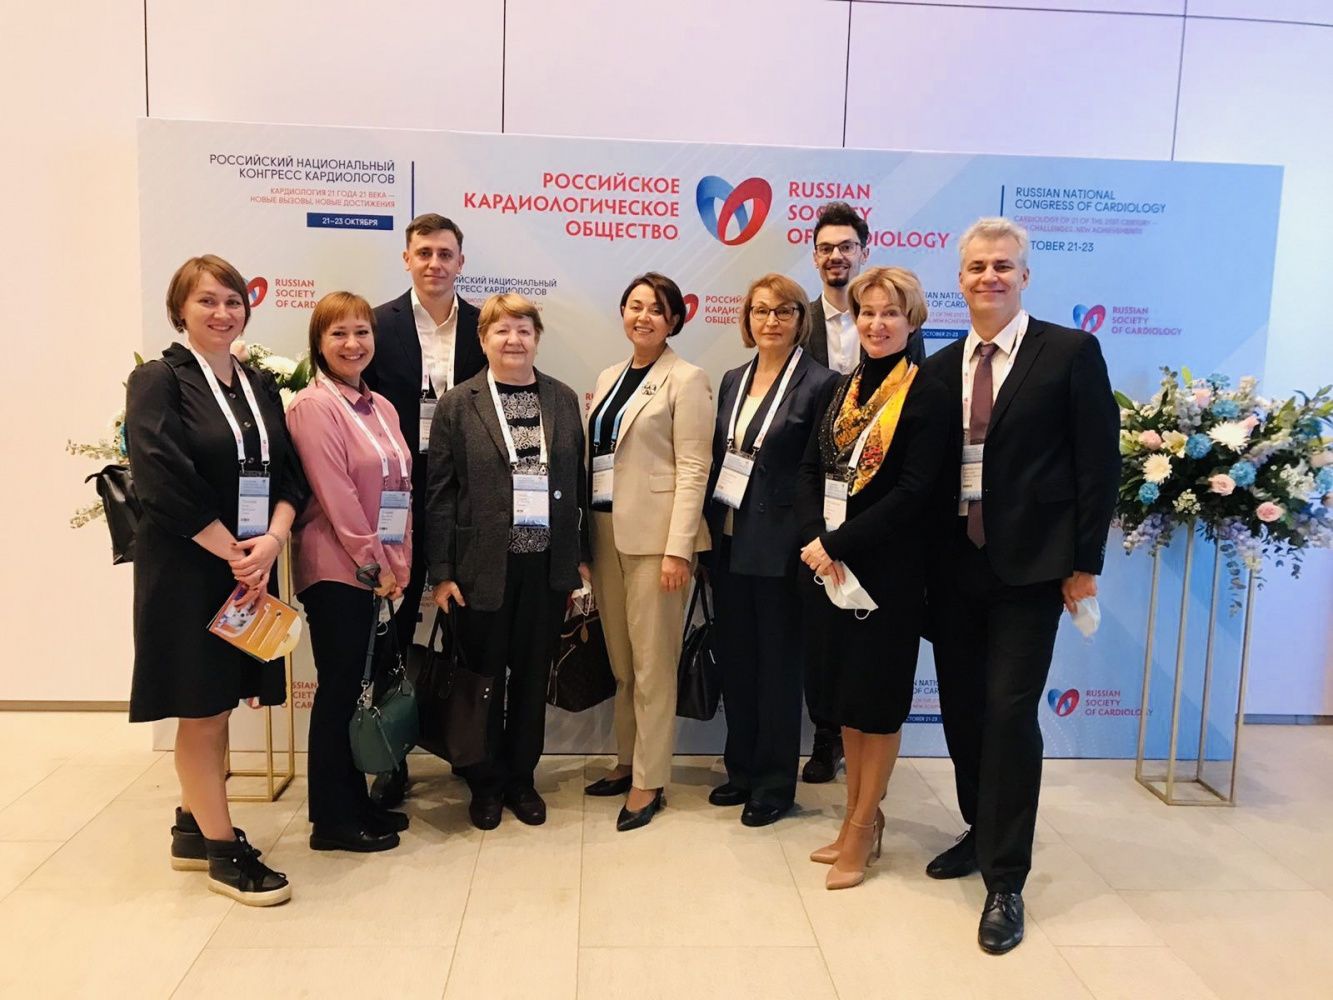 Актуальные новости кардиологии: в Санкт-Петербурге прошел самый большой кардиологический форум